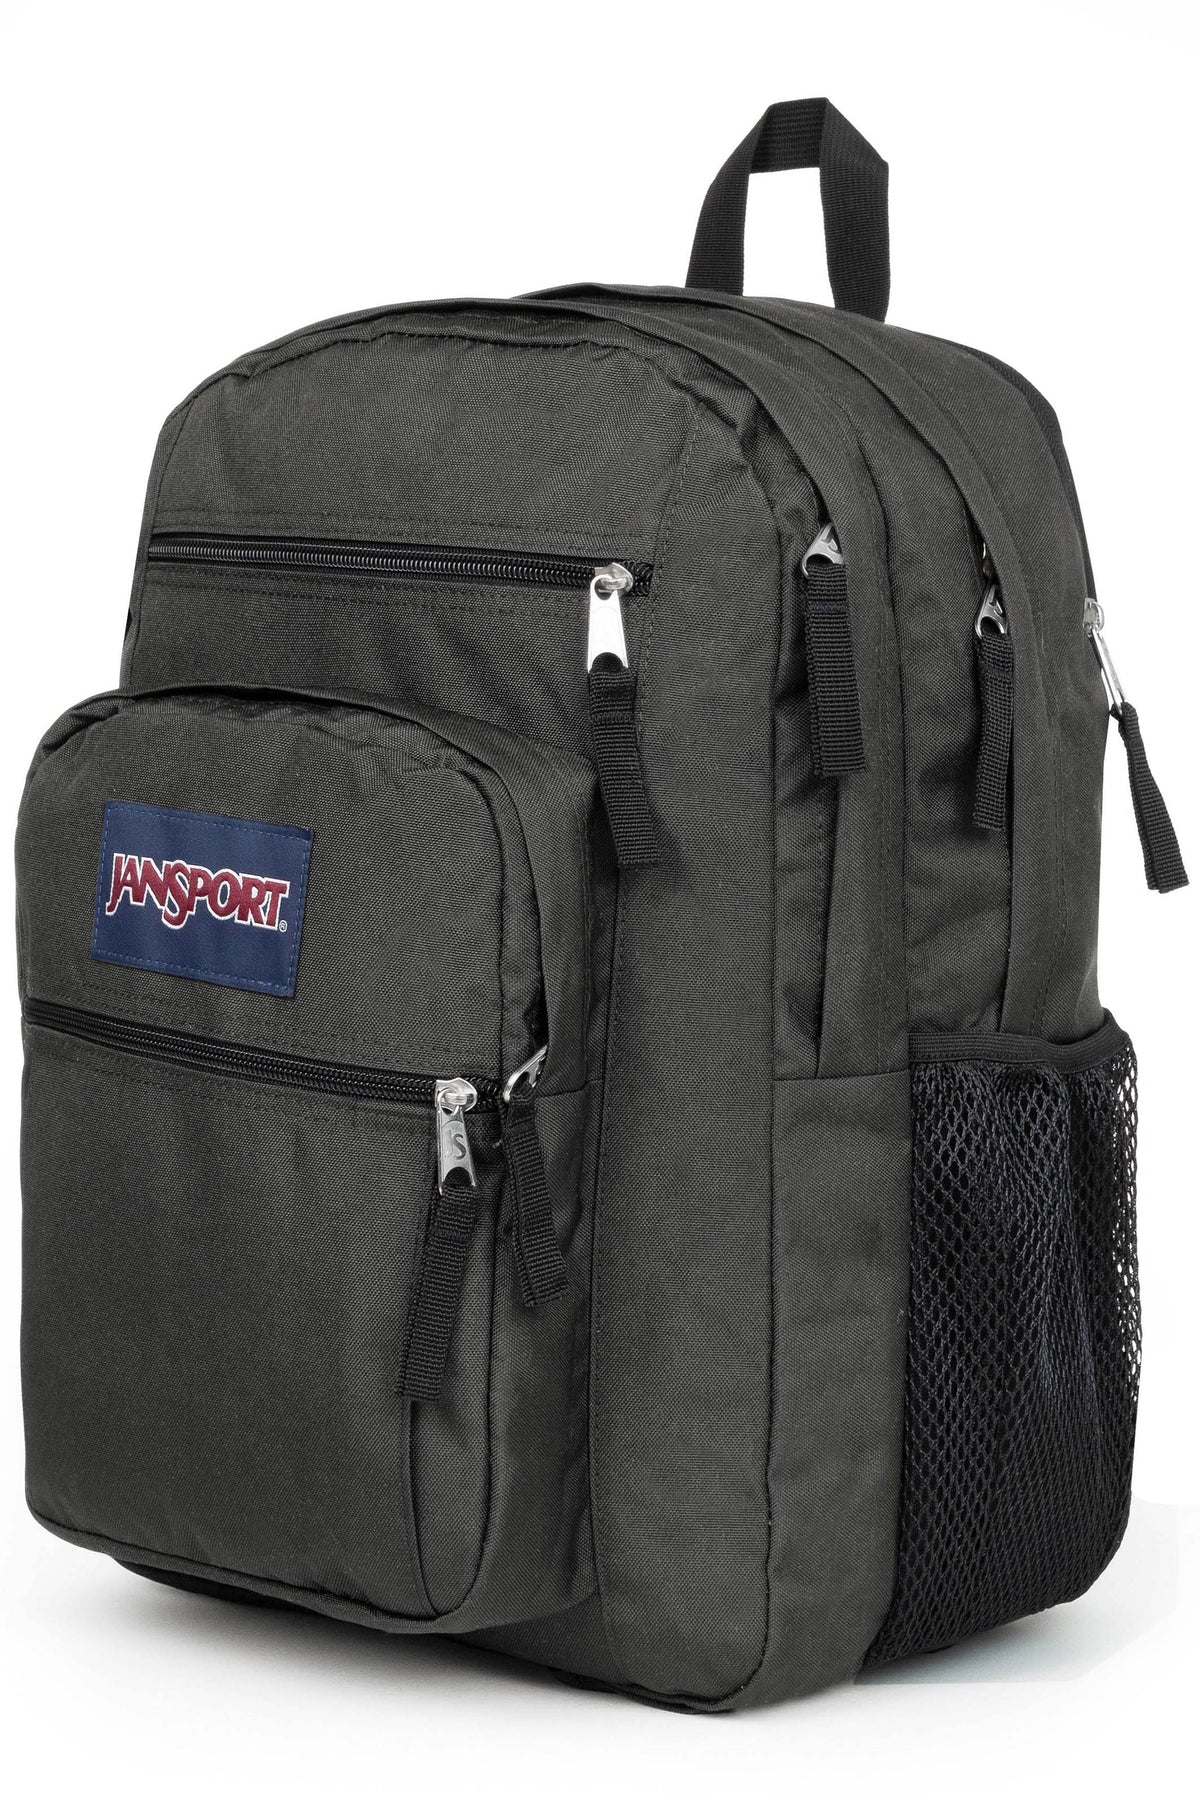 Jansport Big Student Backpack - Graphite Grey